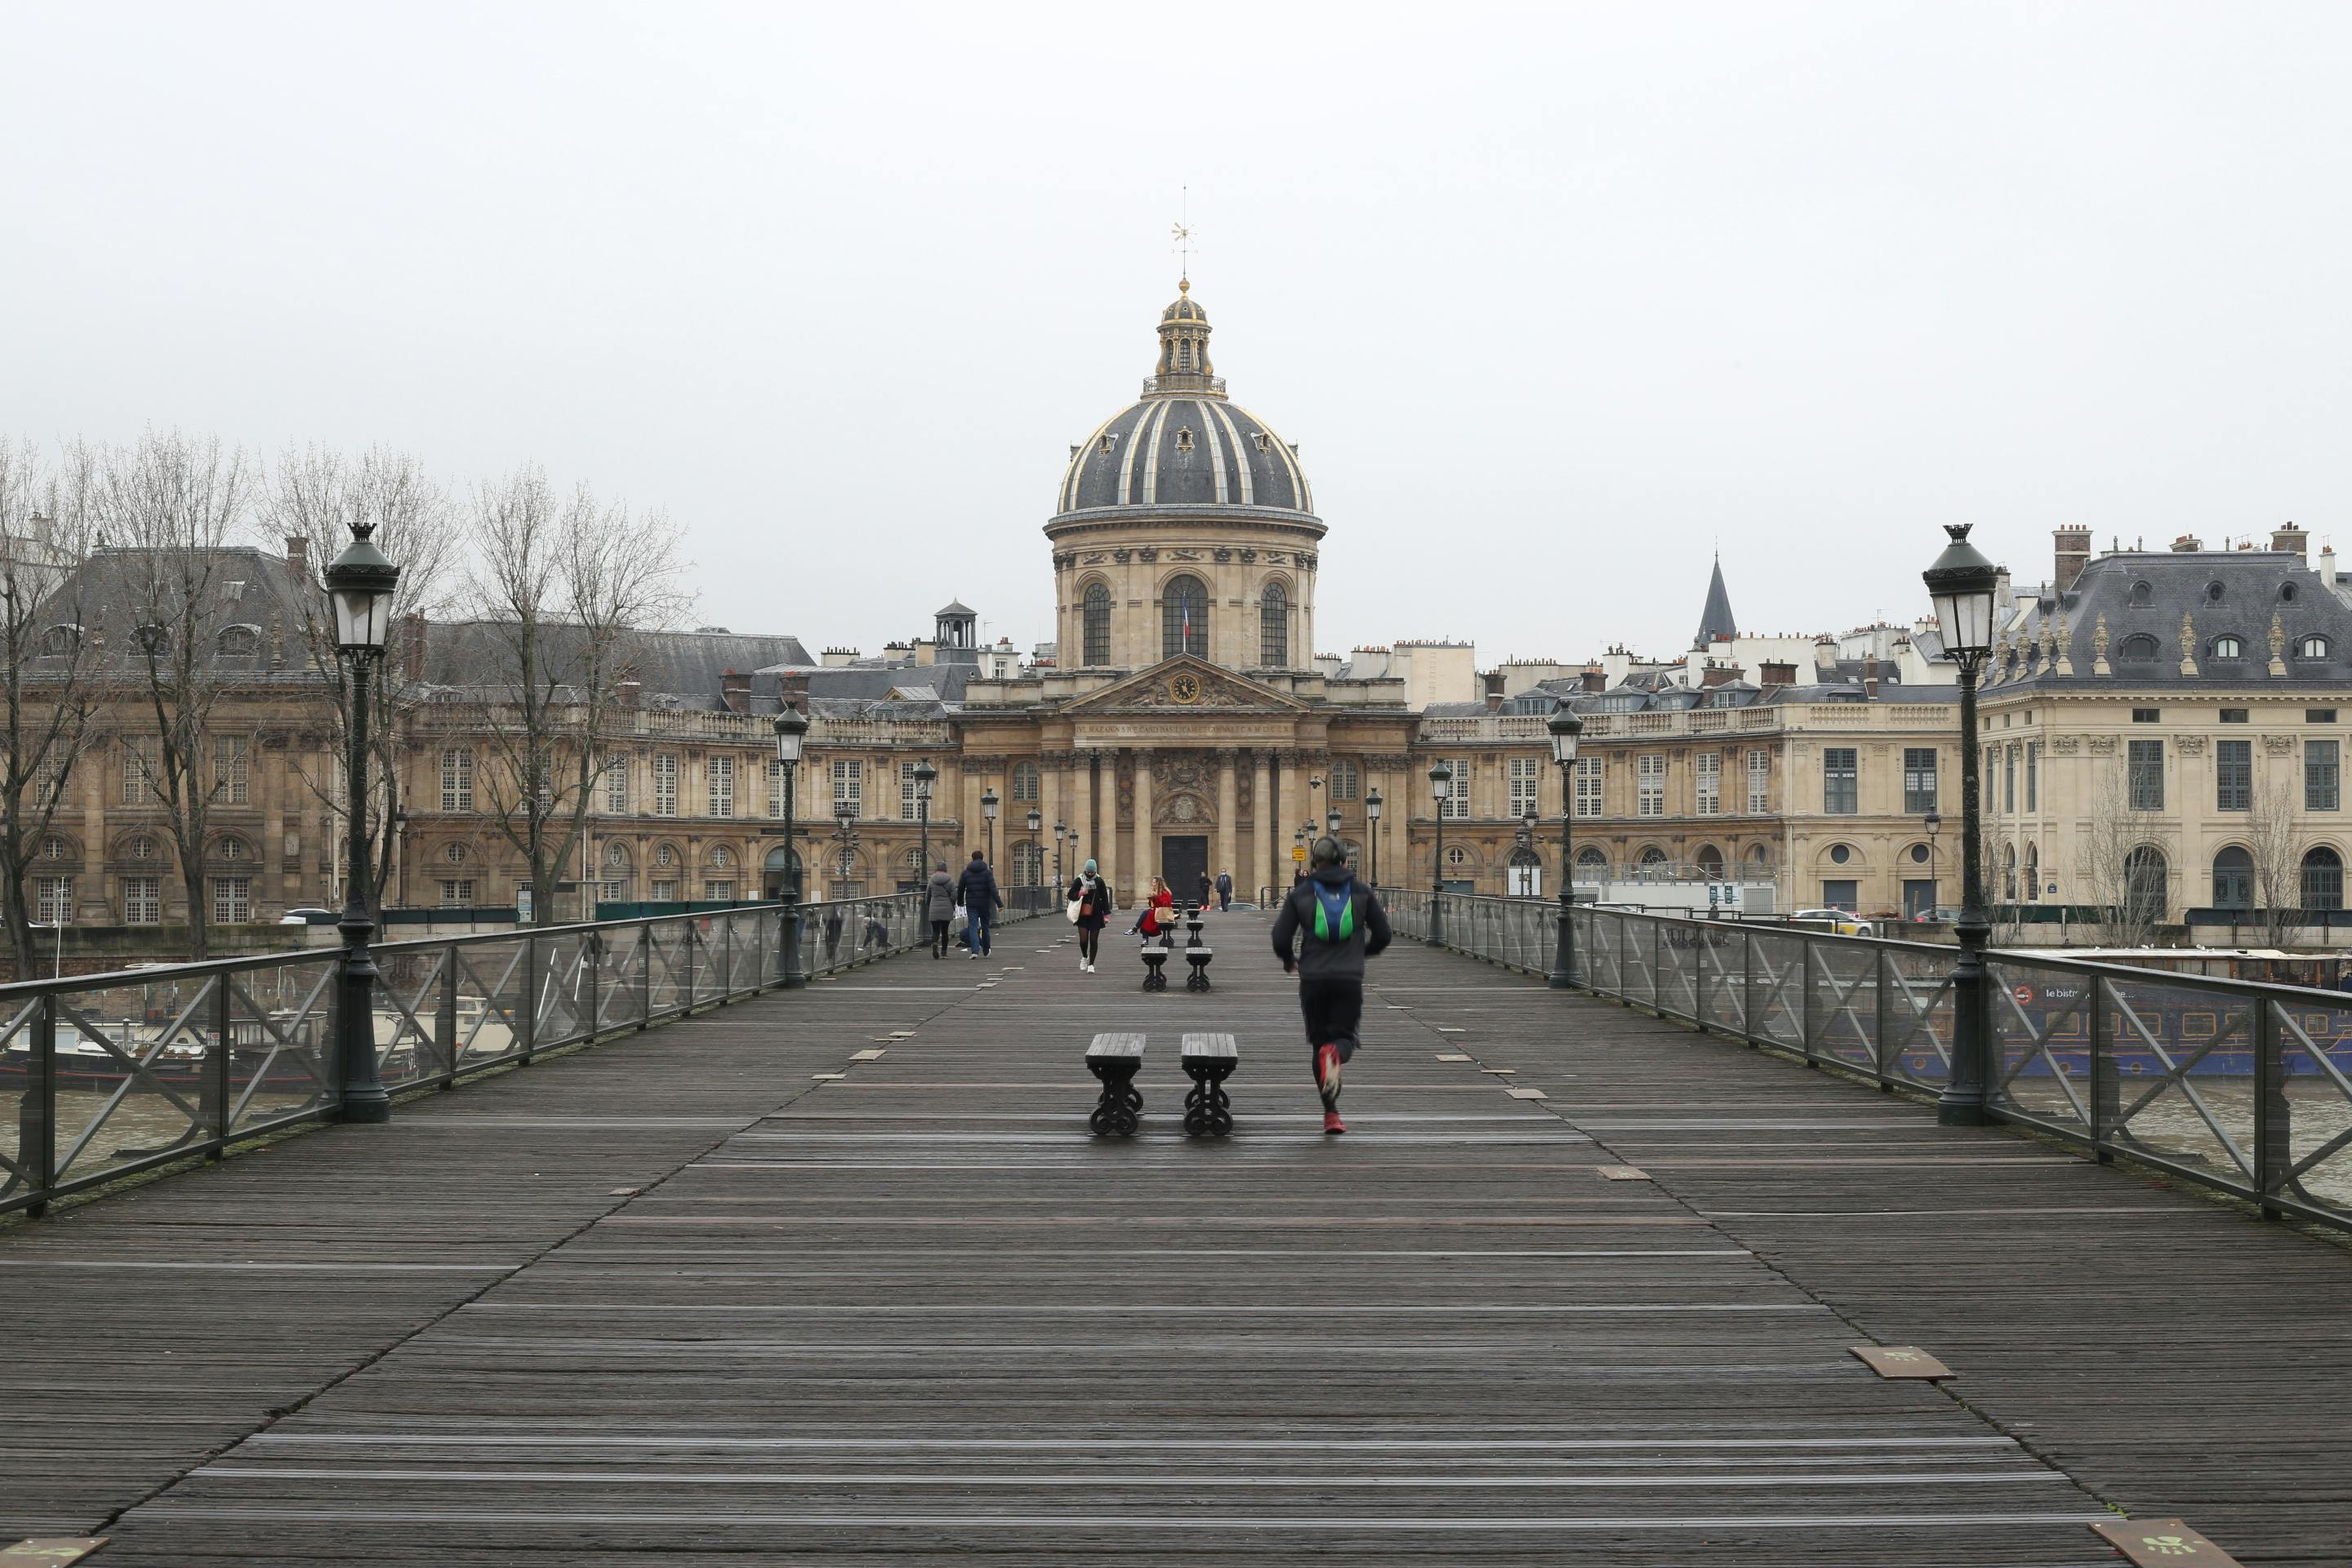 Pont des Arts (Passerelle des Arts), Paris, France